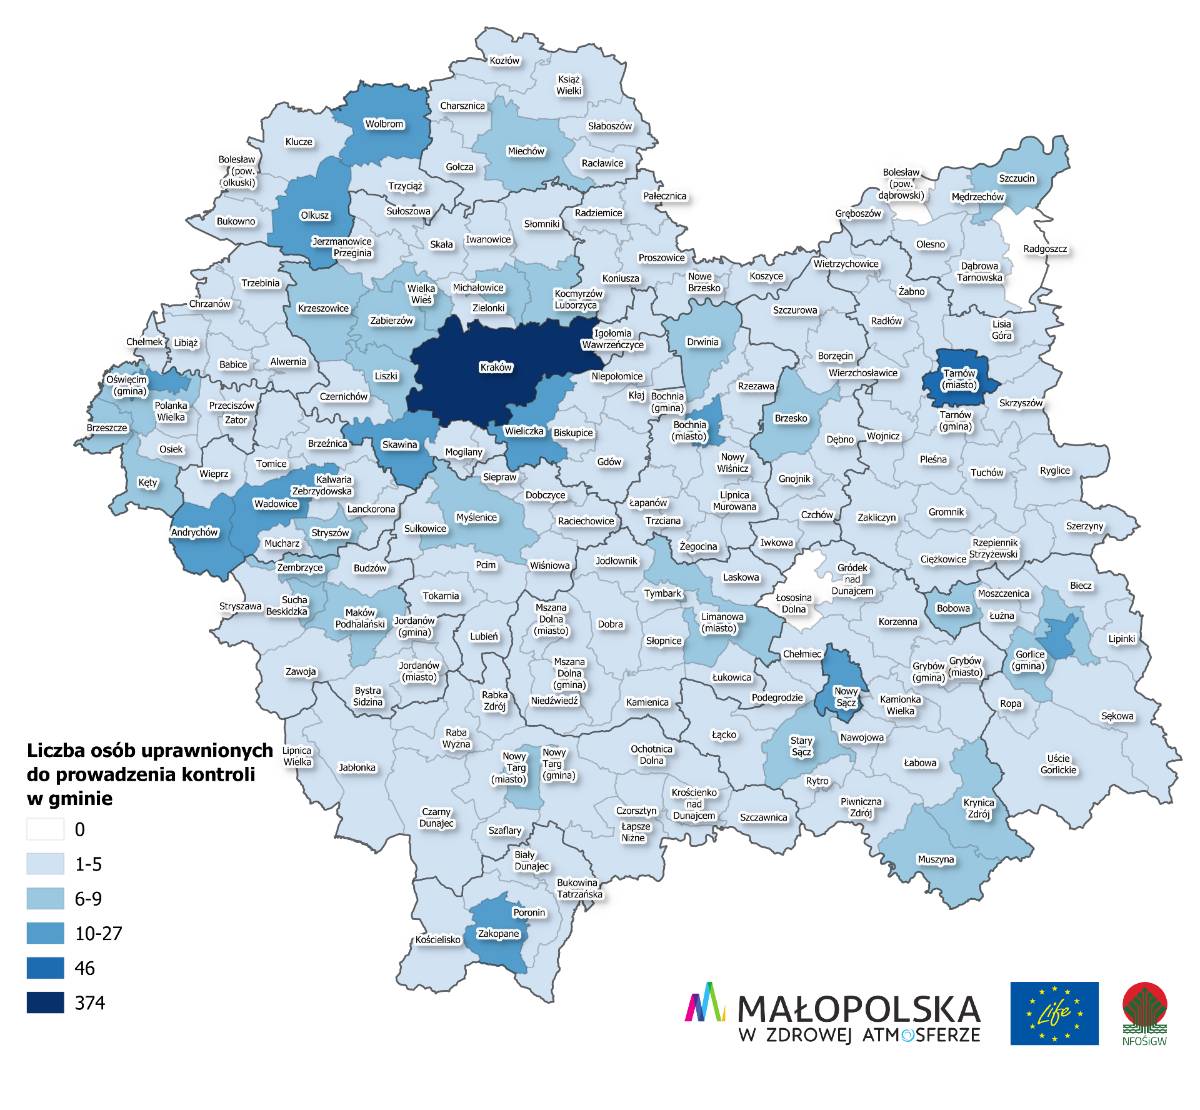 Mapka obrazująca liczbę osób uprawnionych do kontroli w małopolskich gminach